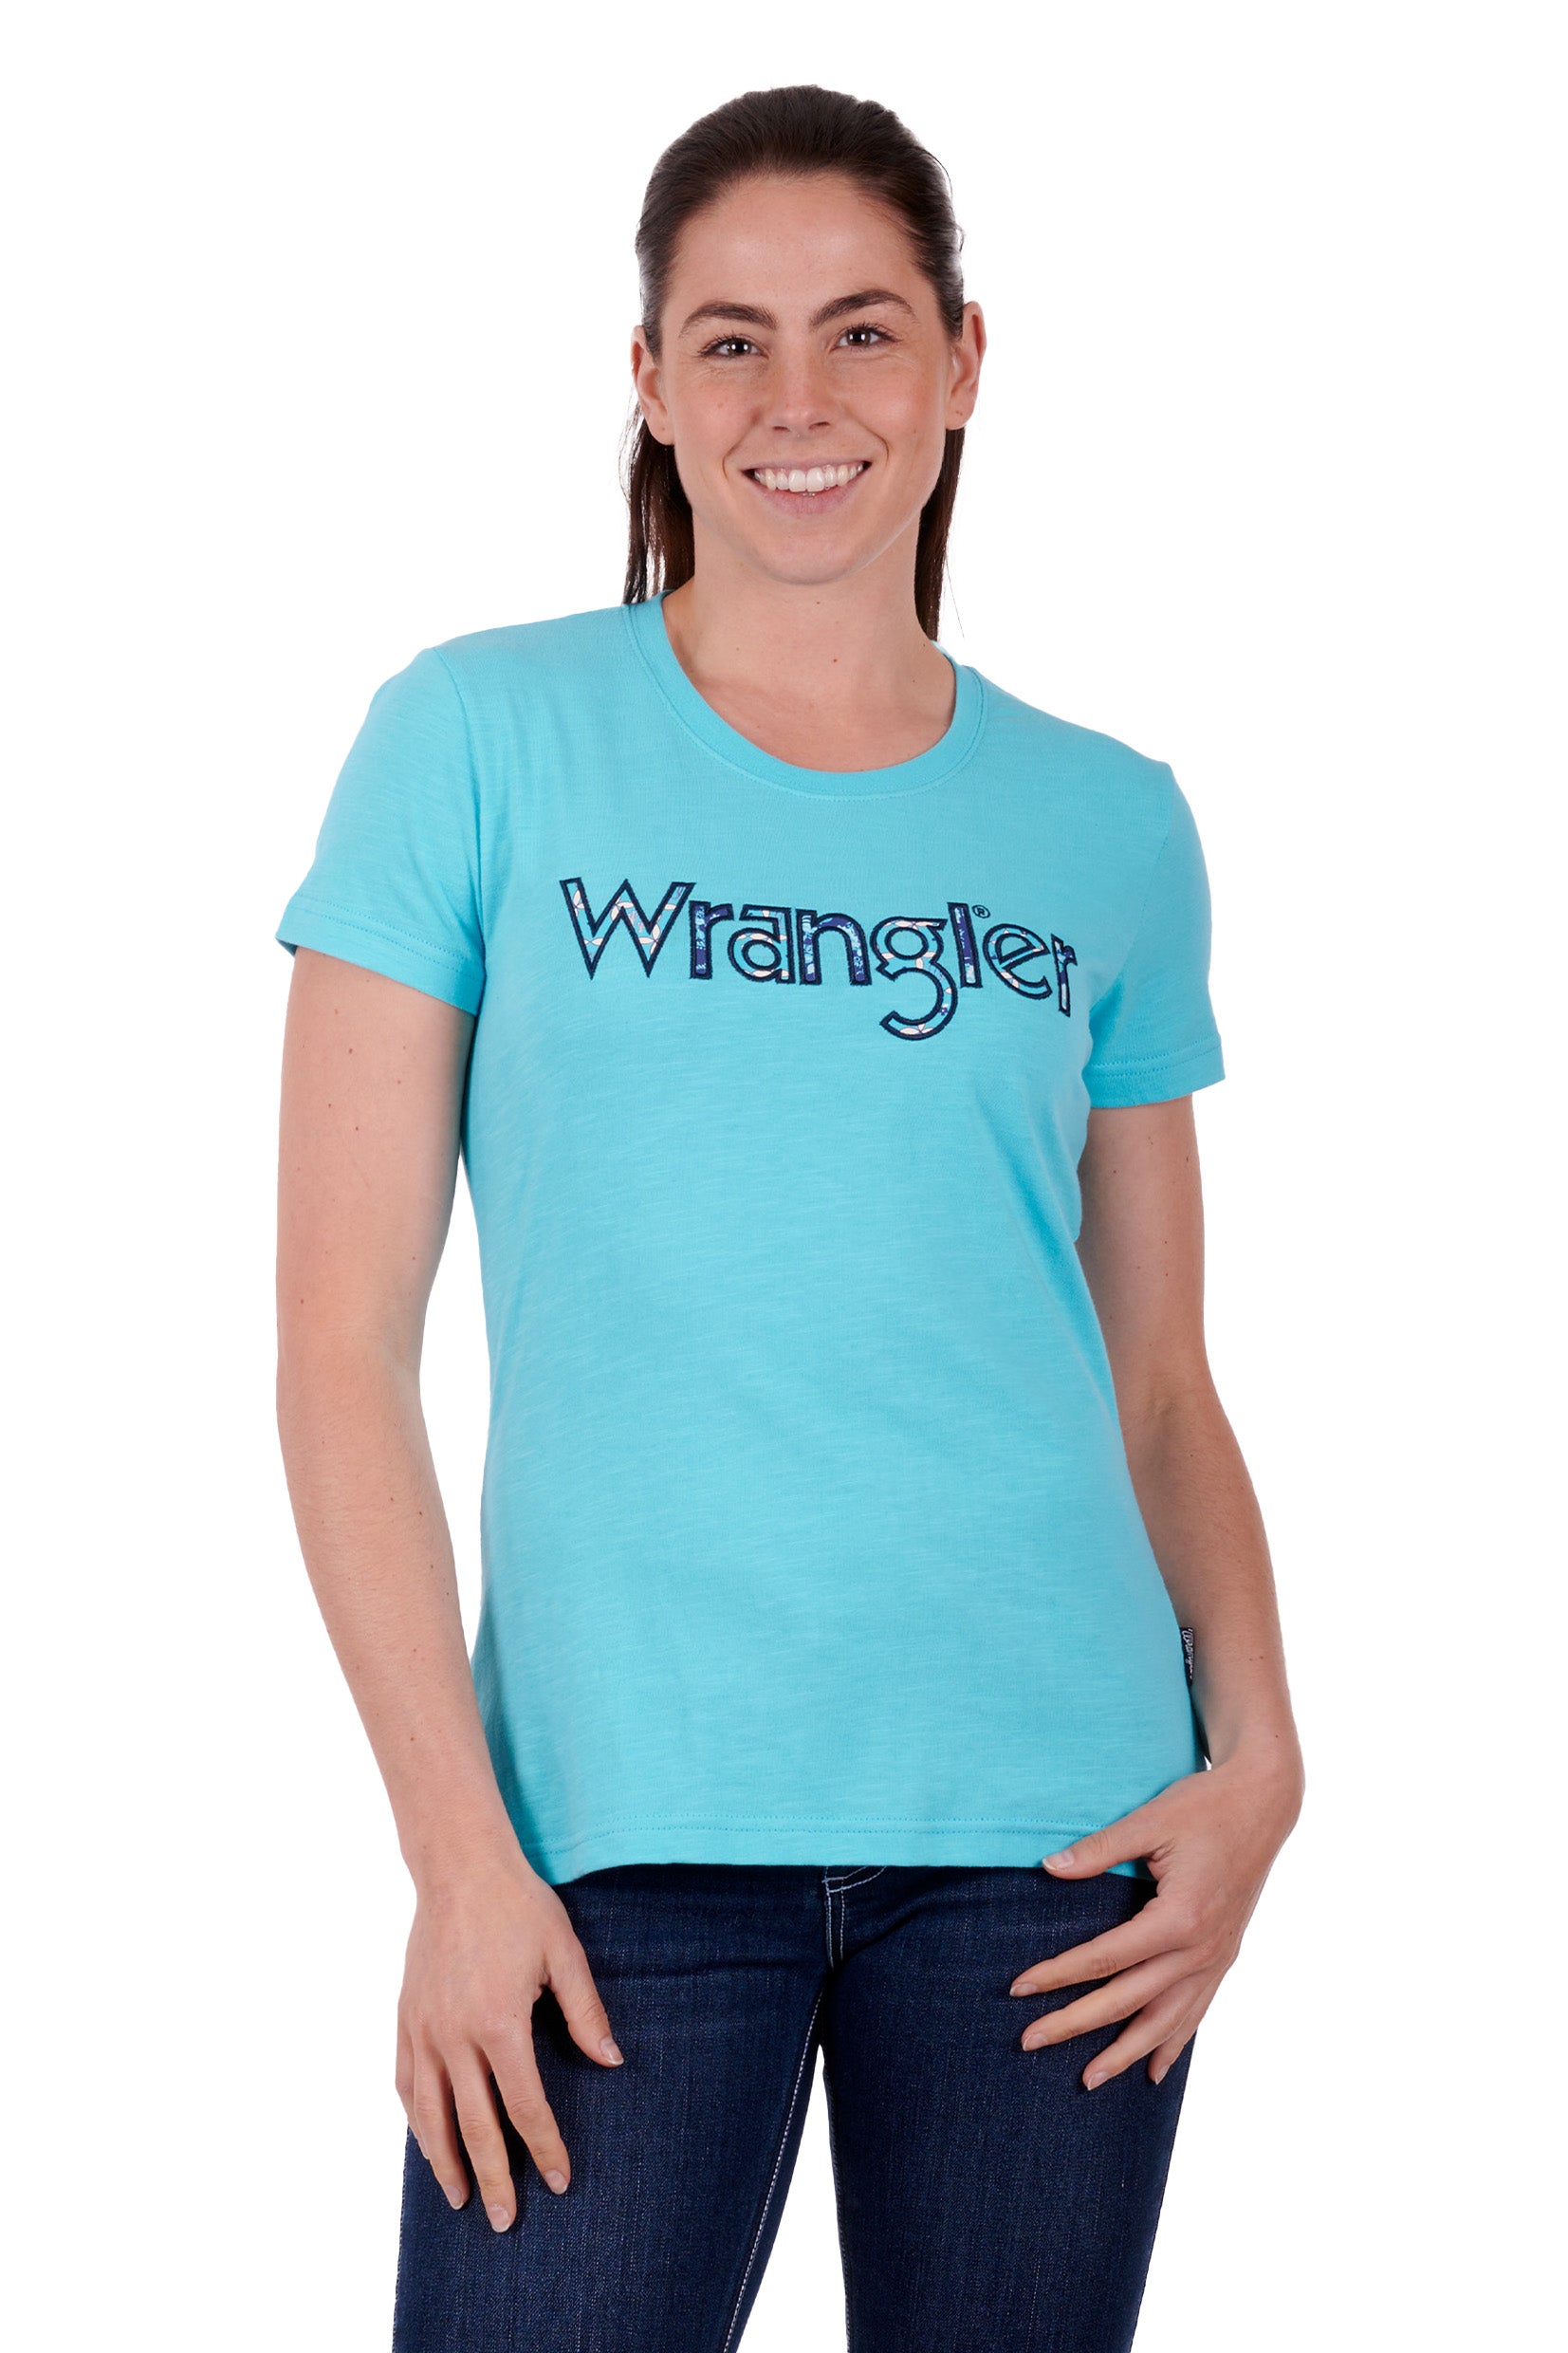 Wrangler Women's Addison Short Sleeve Tee